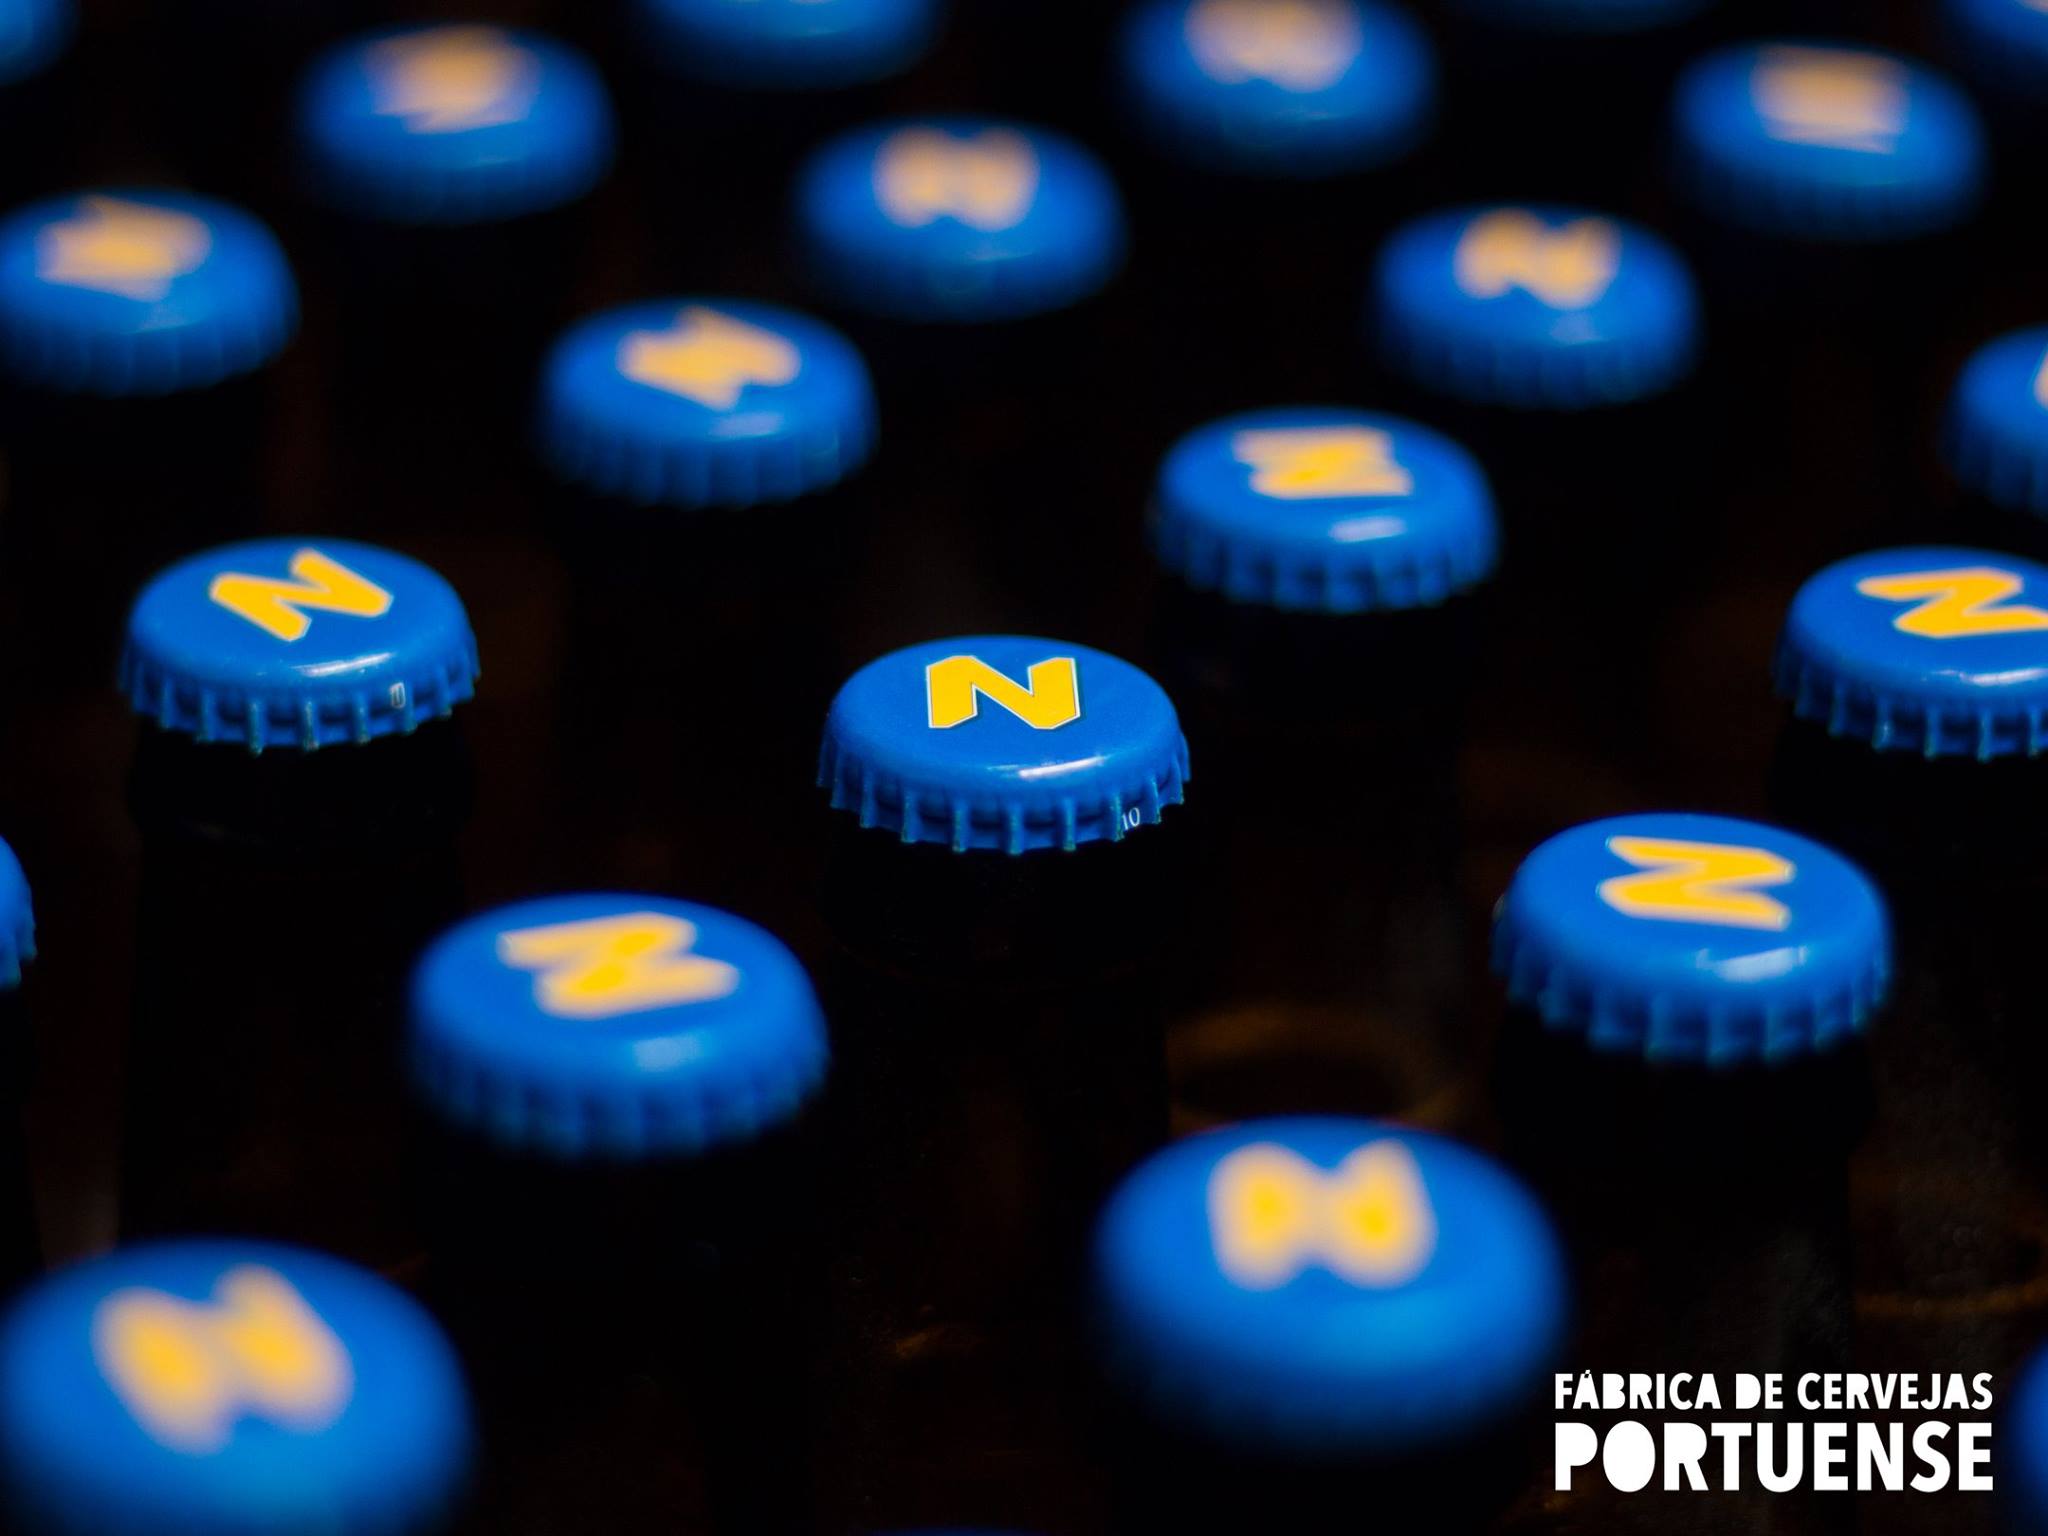 Fábrica de Cervejas Portuense